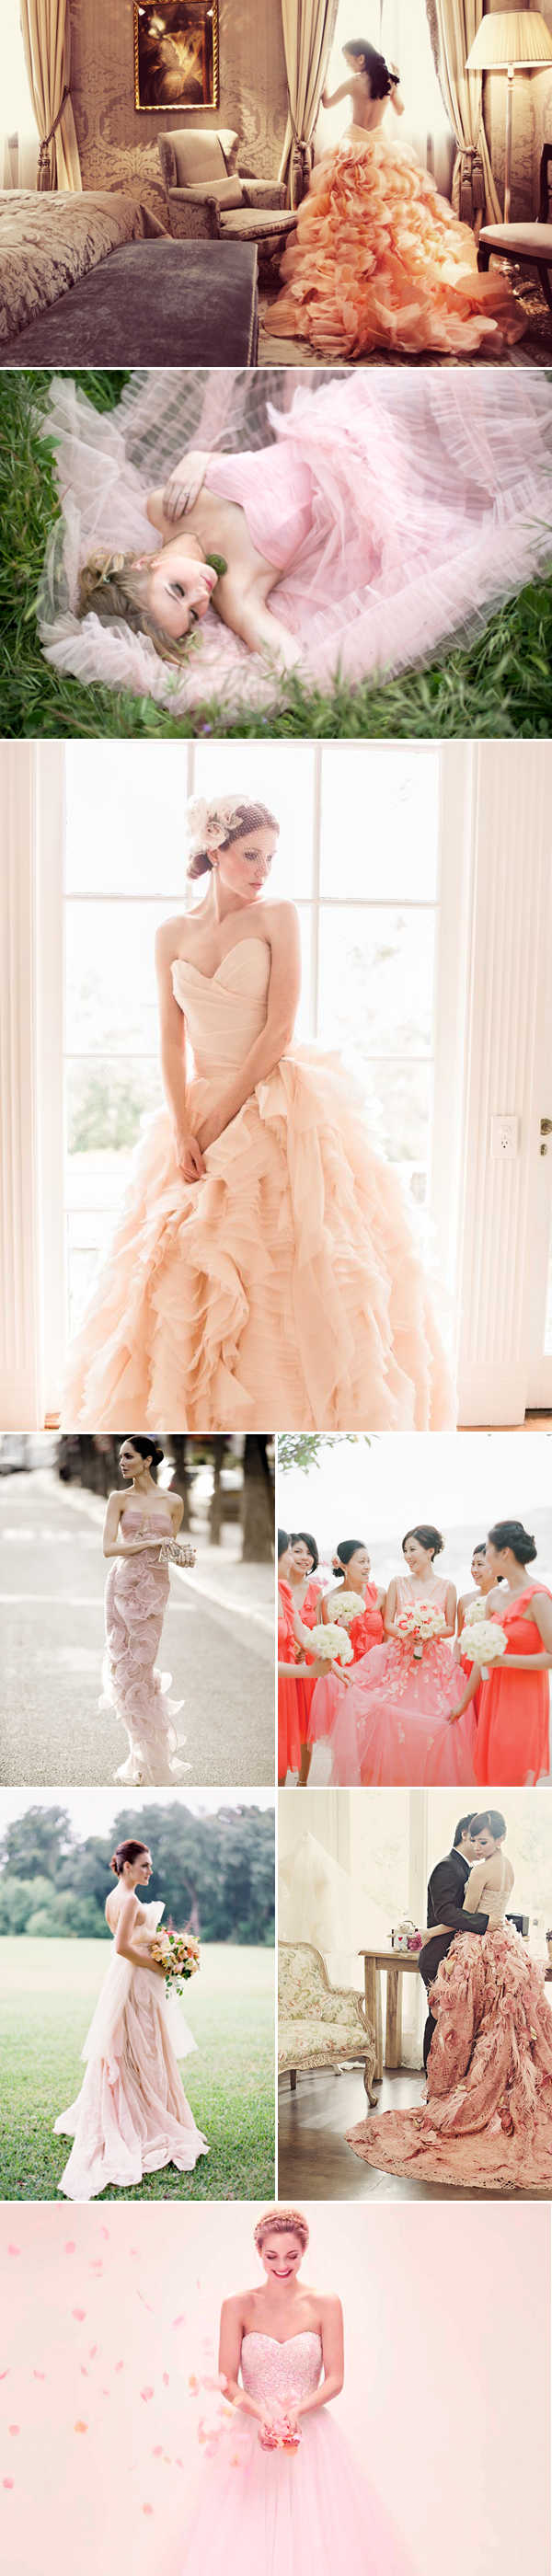 Color wedding dresses02-pink